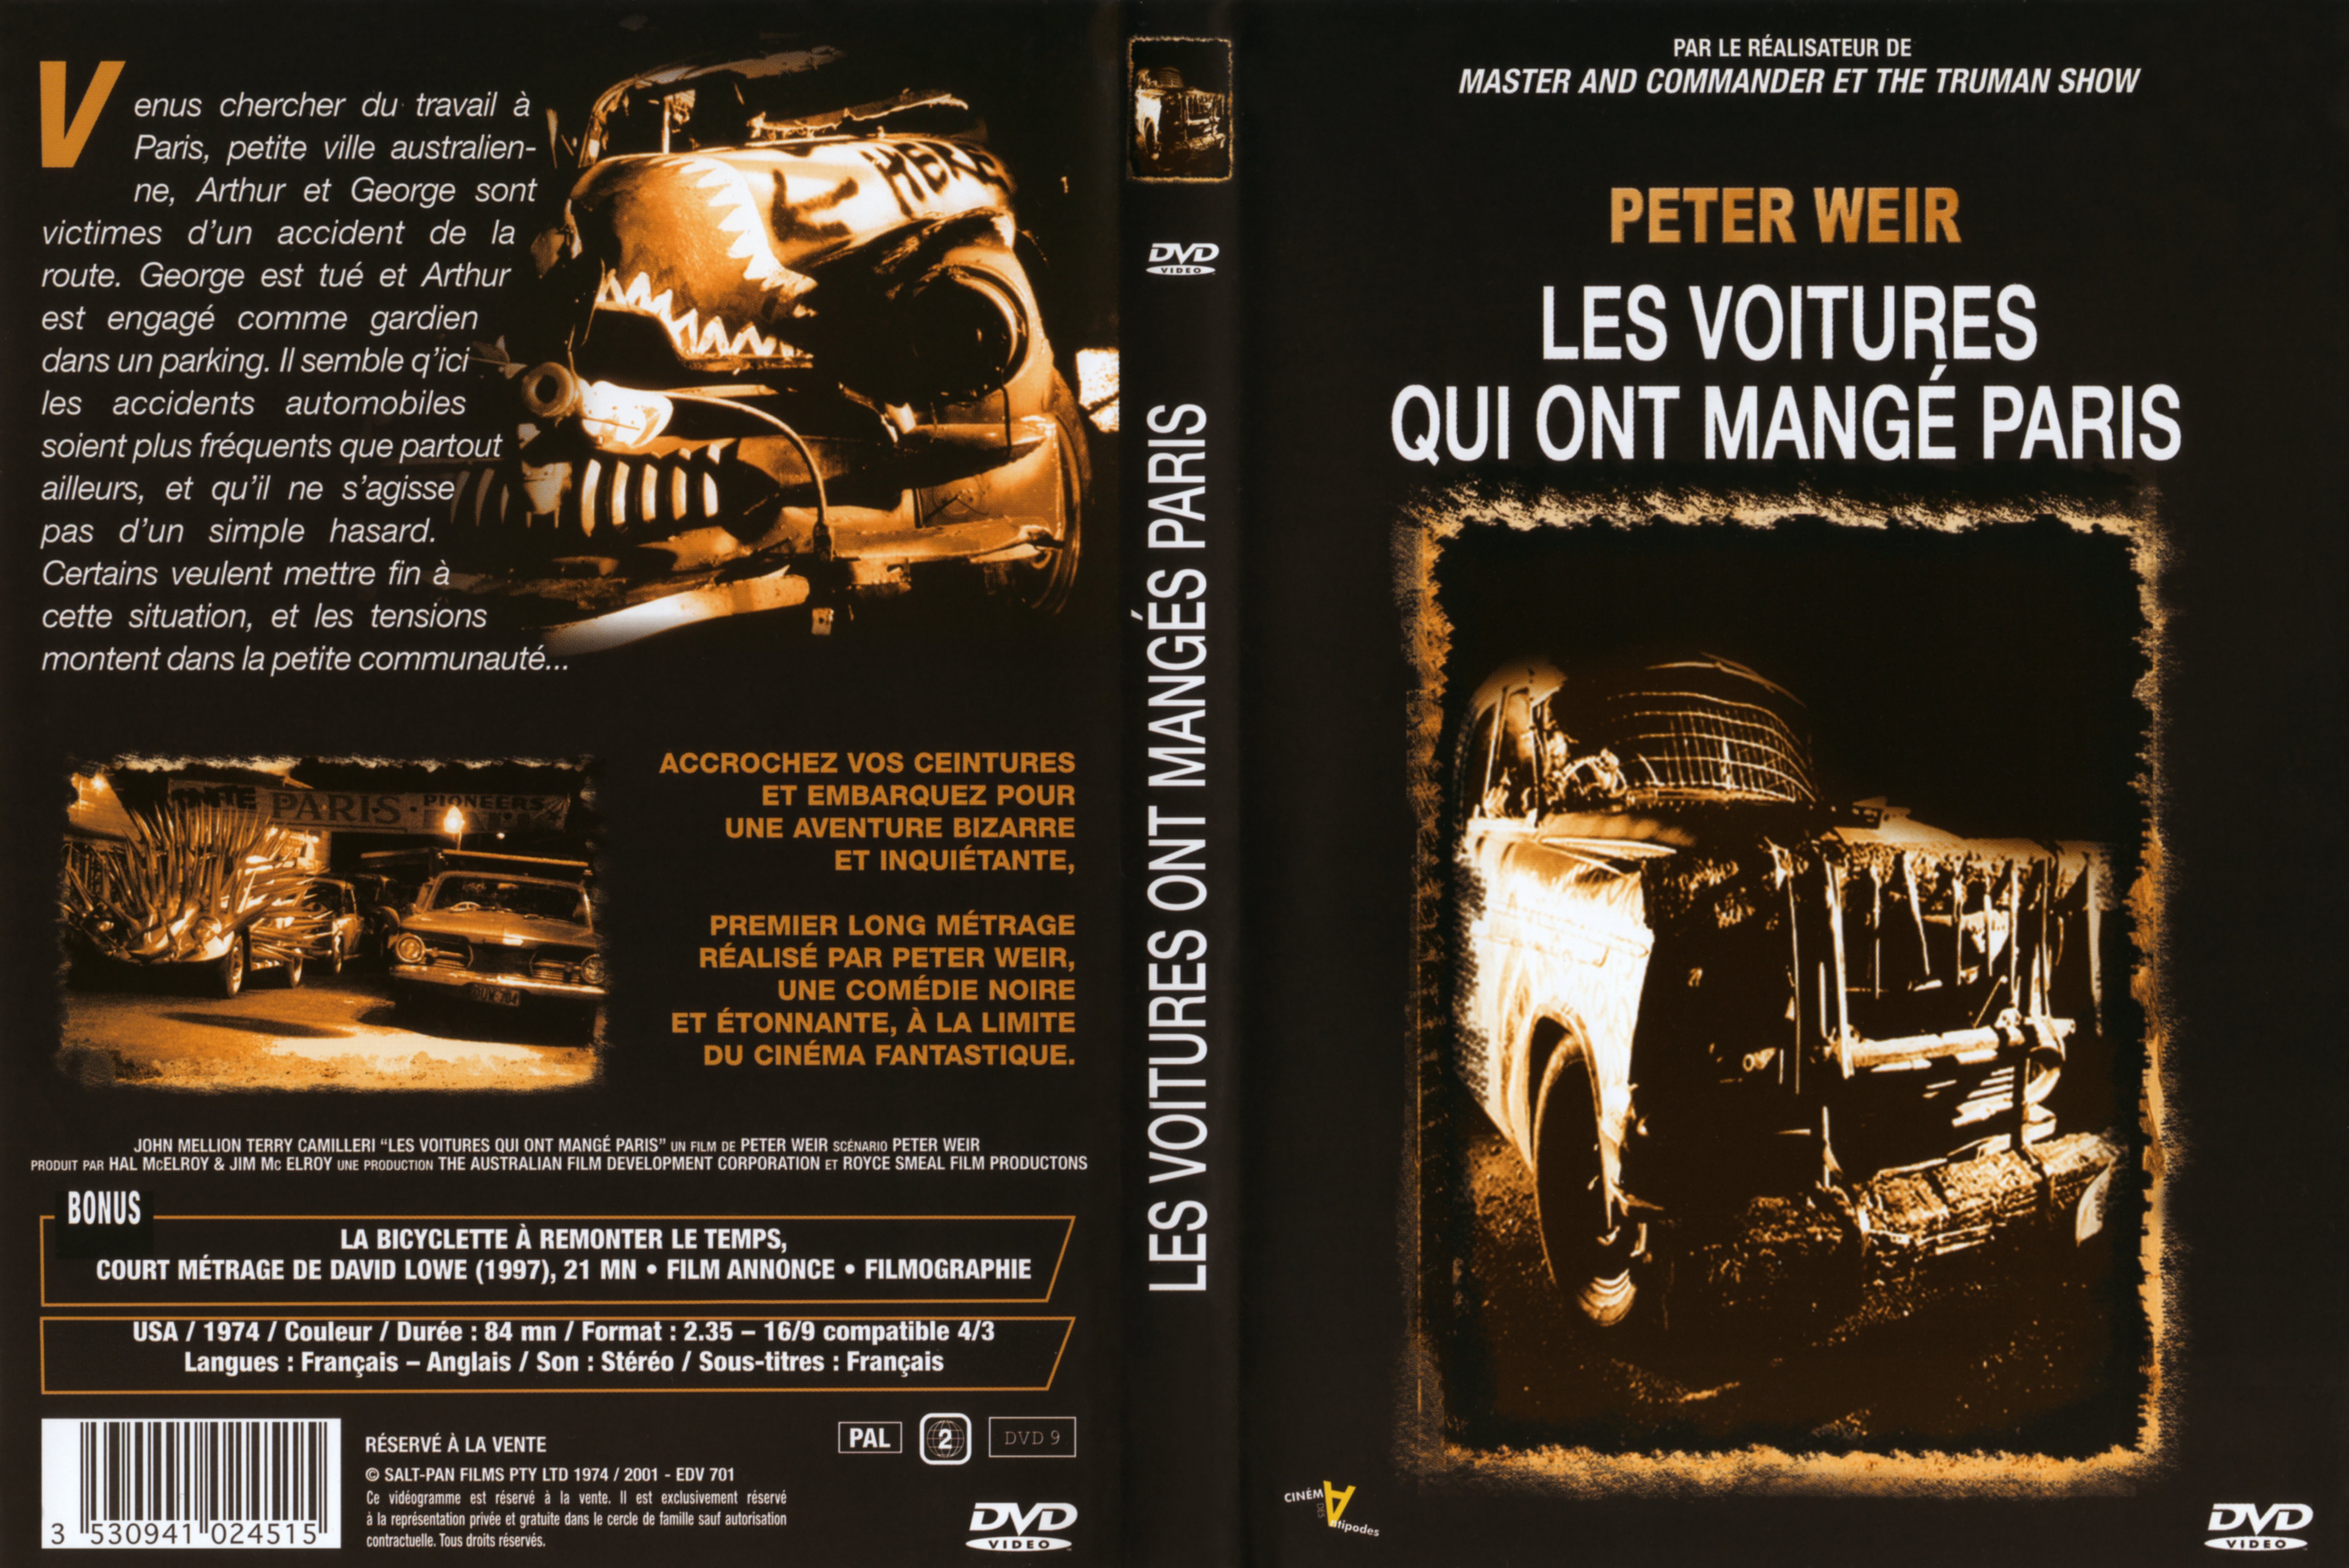 Jaquette DVD Les voitures qui ont mangs Paris